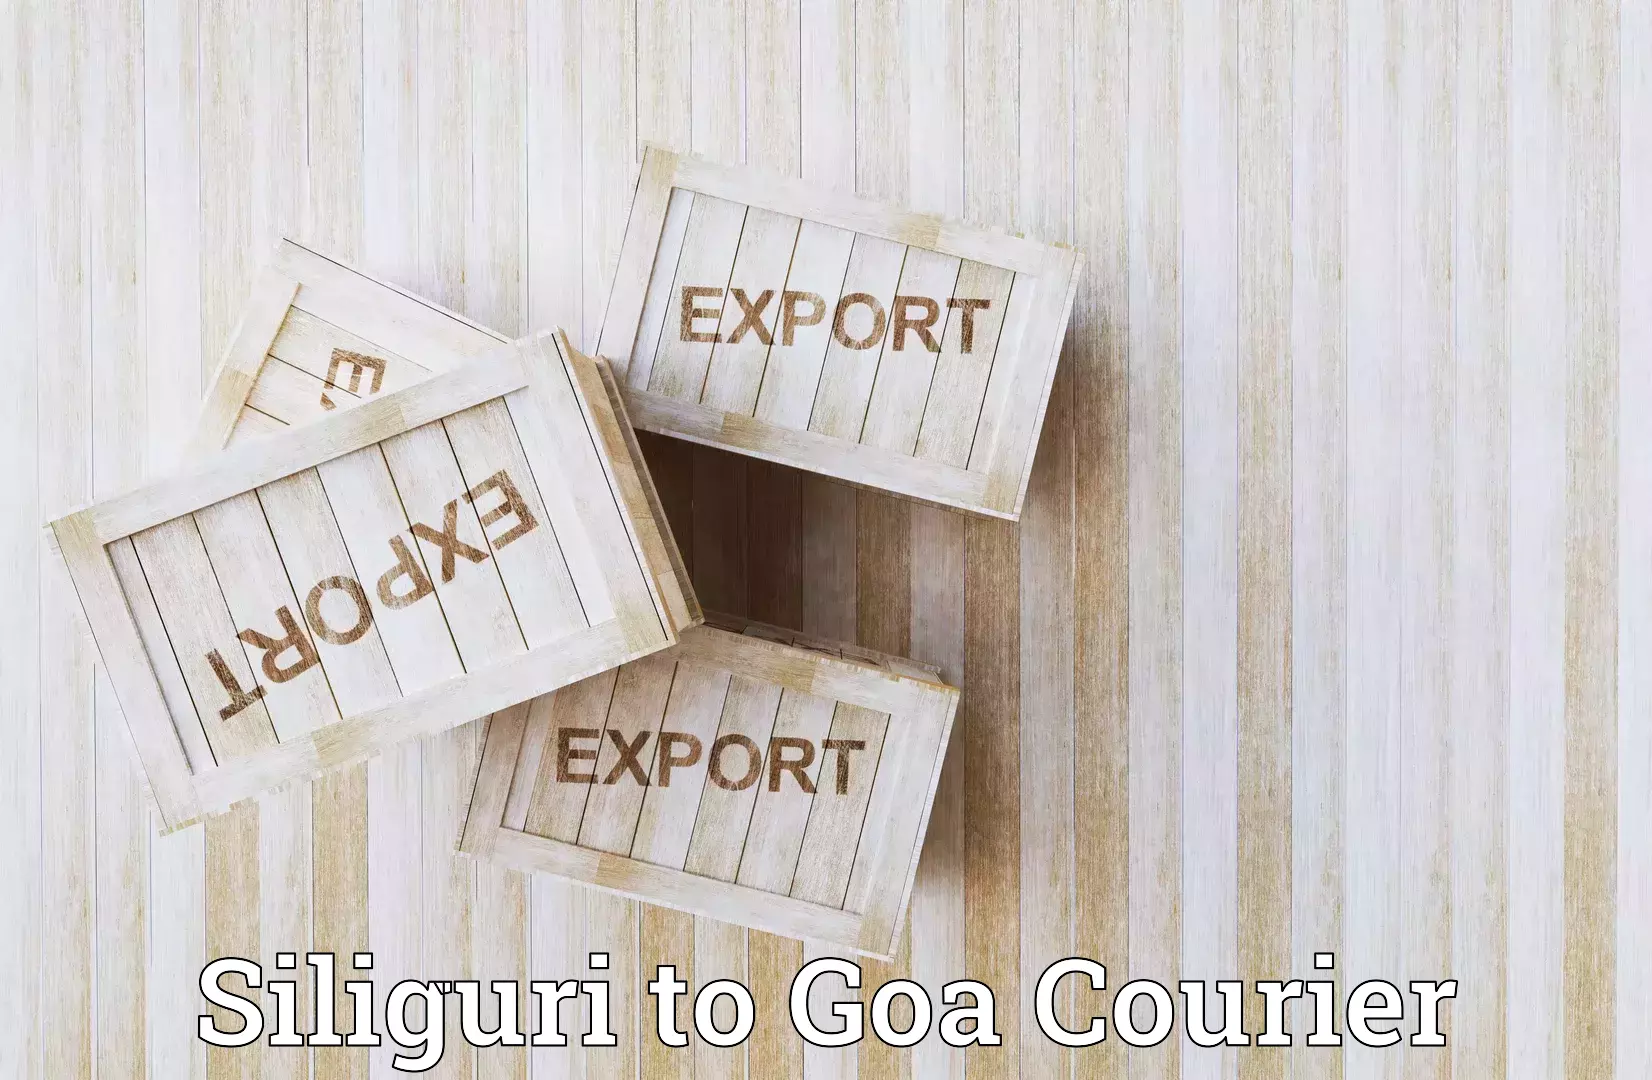 Efficient cargo services Siliguri to NIT Goa